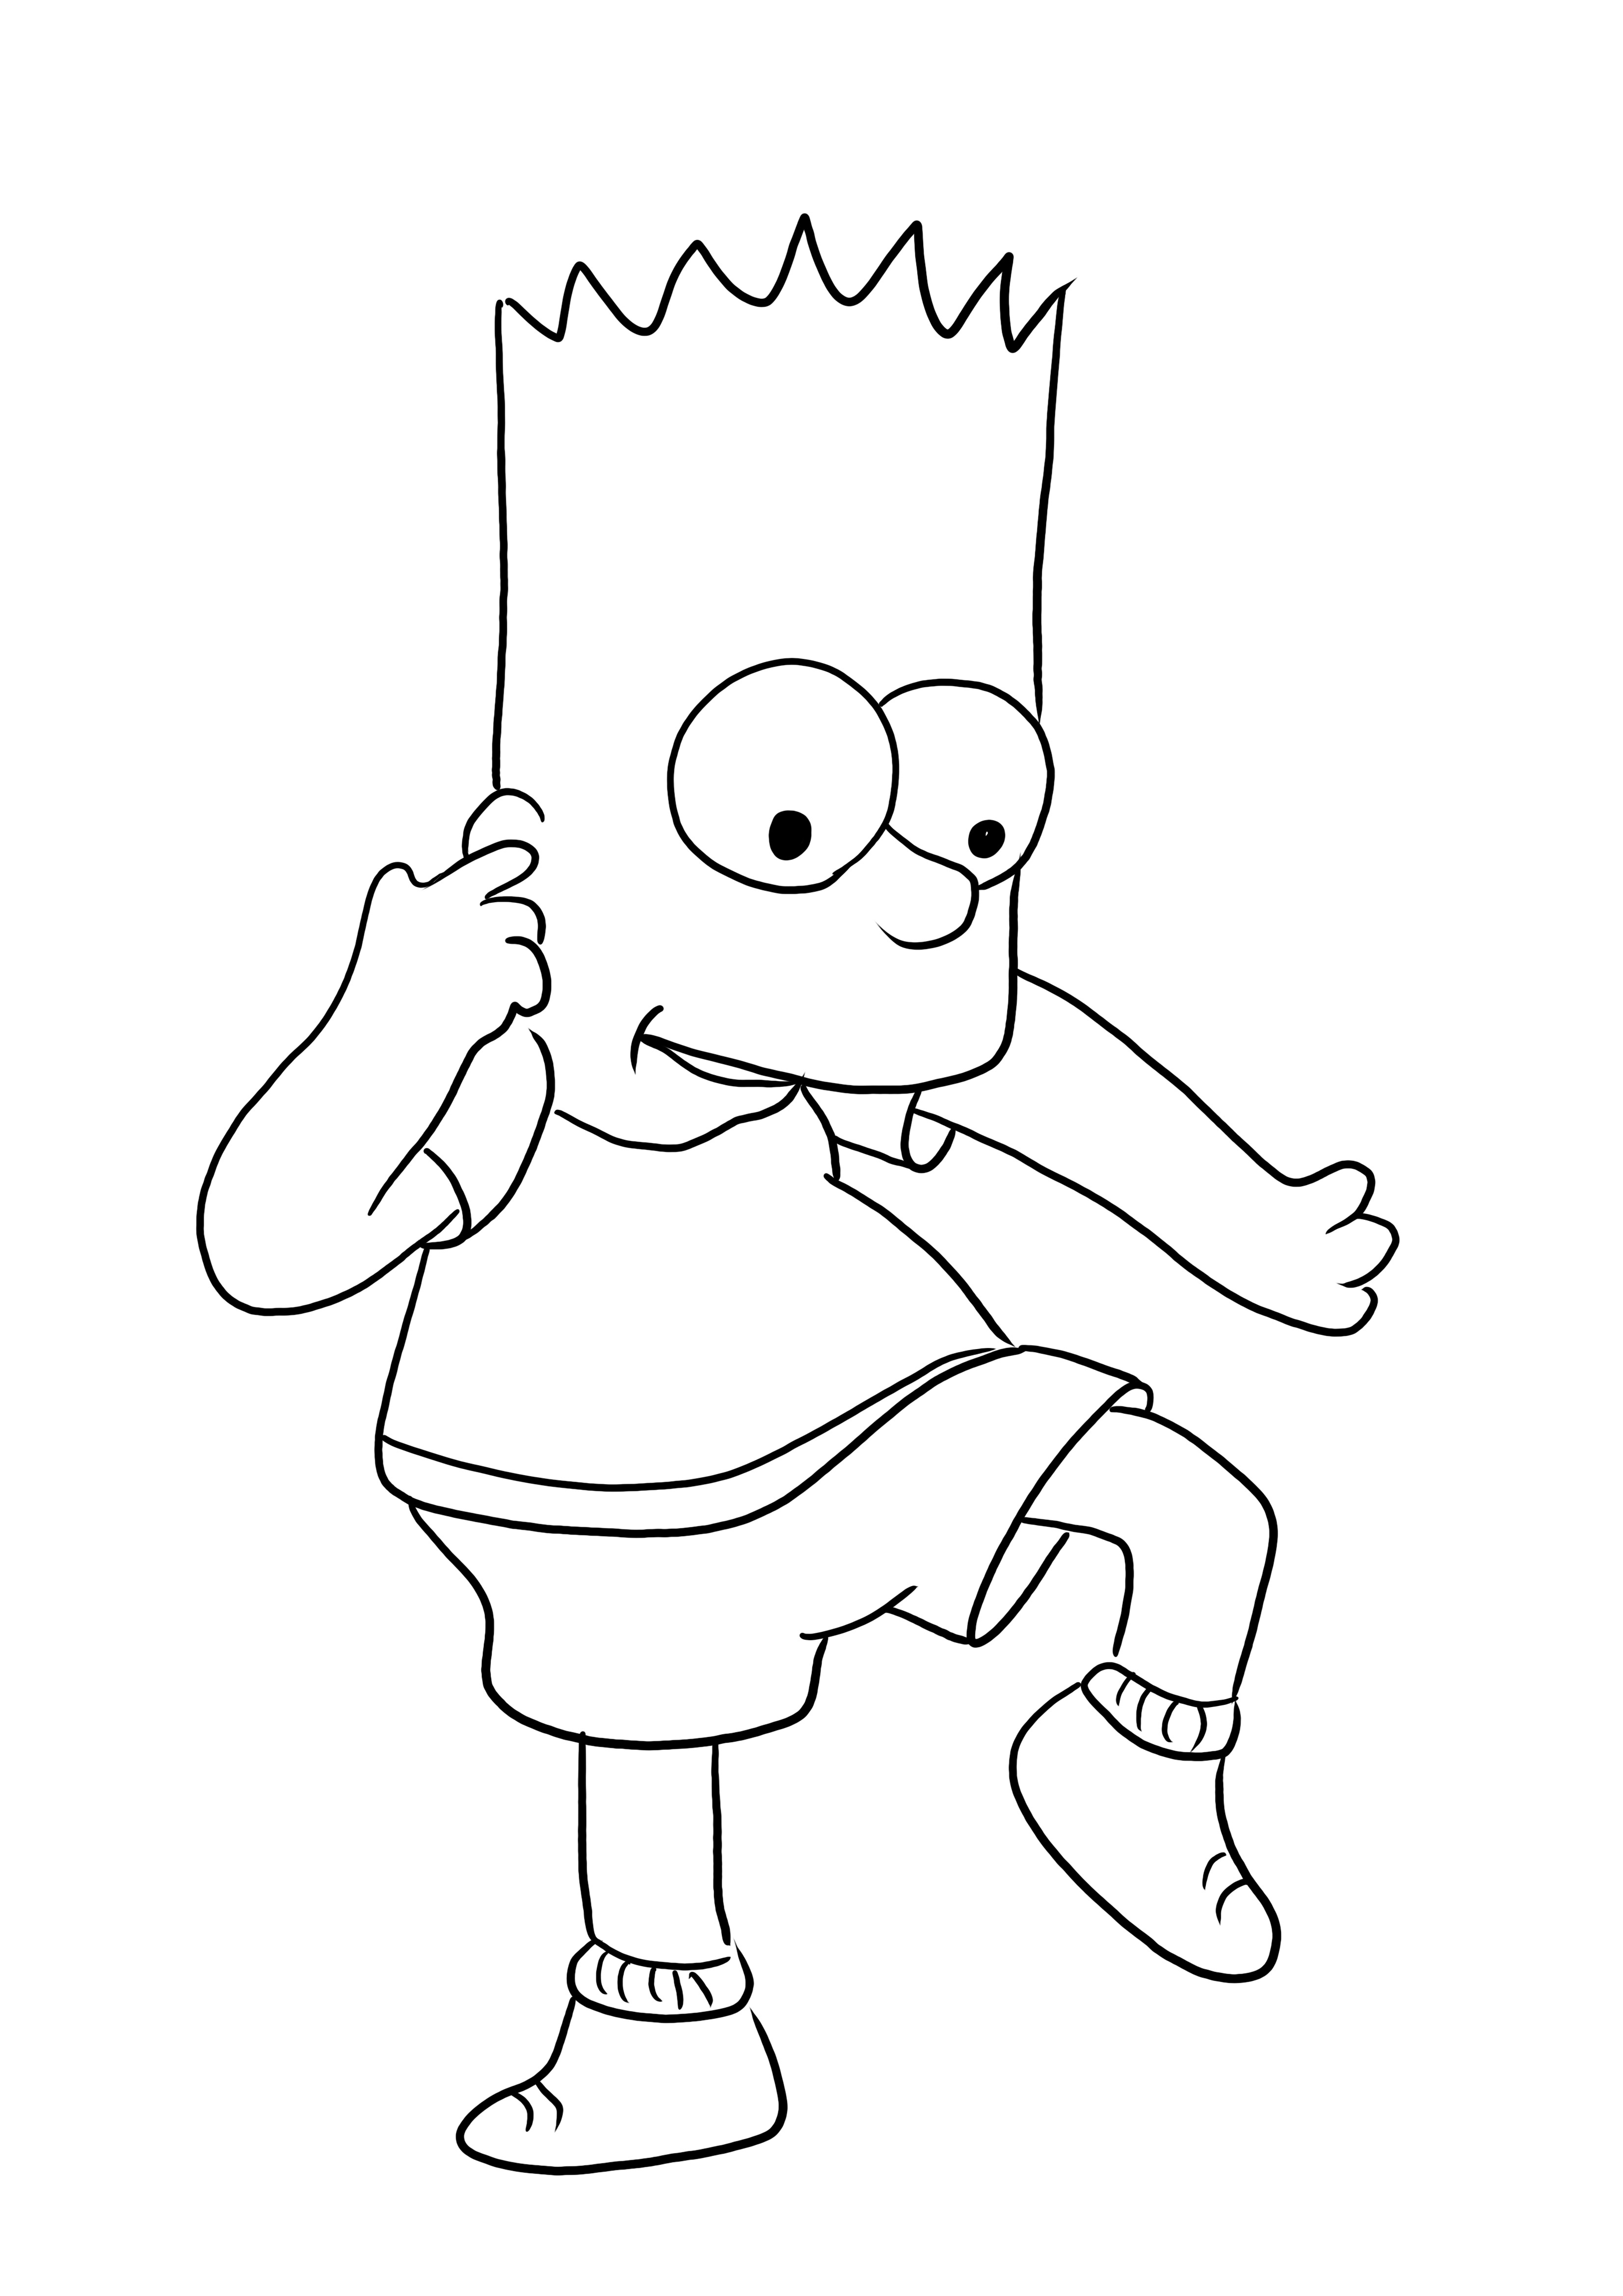 Çocuklar için kolay boyama için Bart Simpson danssız yazdırılabilir